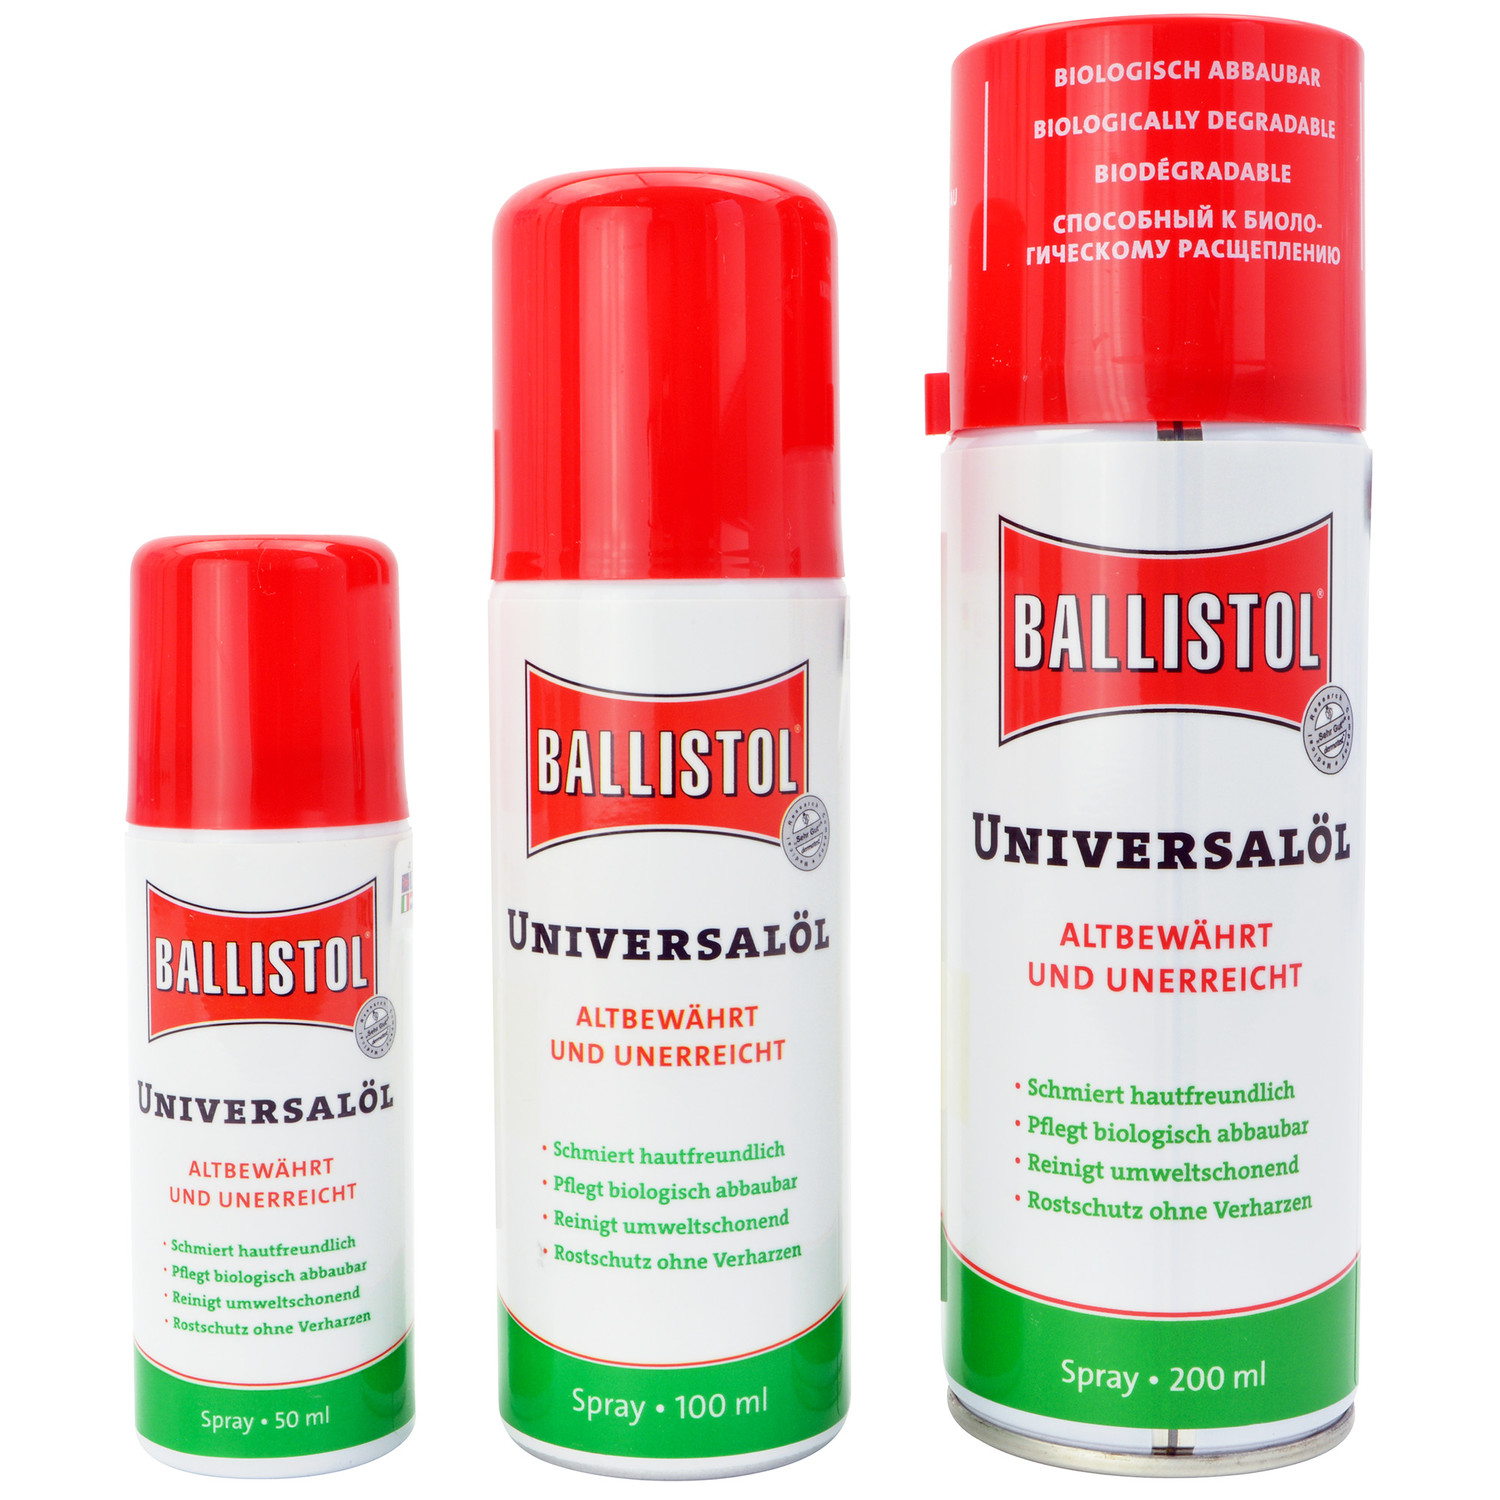 Ballistol Universalöl Spray in 50 ml, 100 ml oder 200 ml Sprühflasche